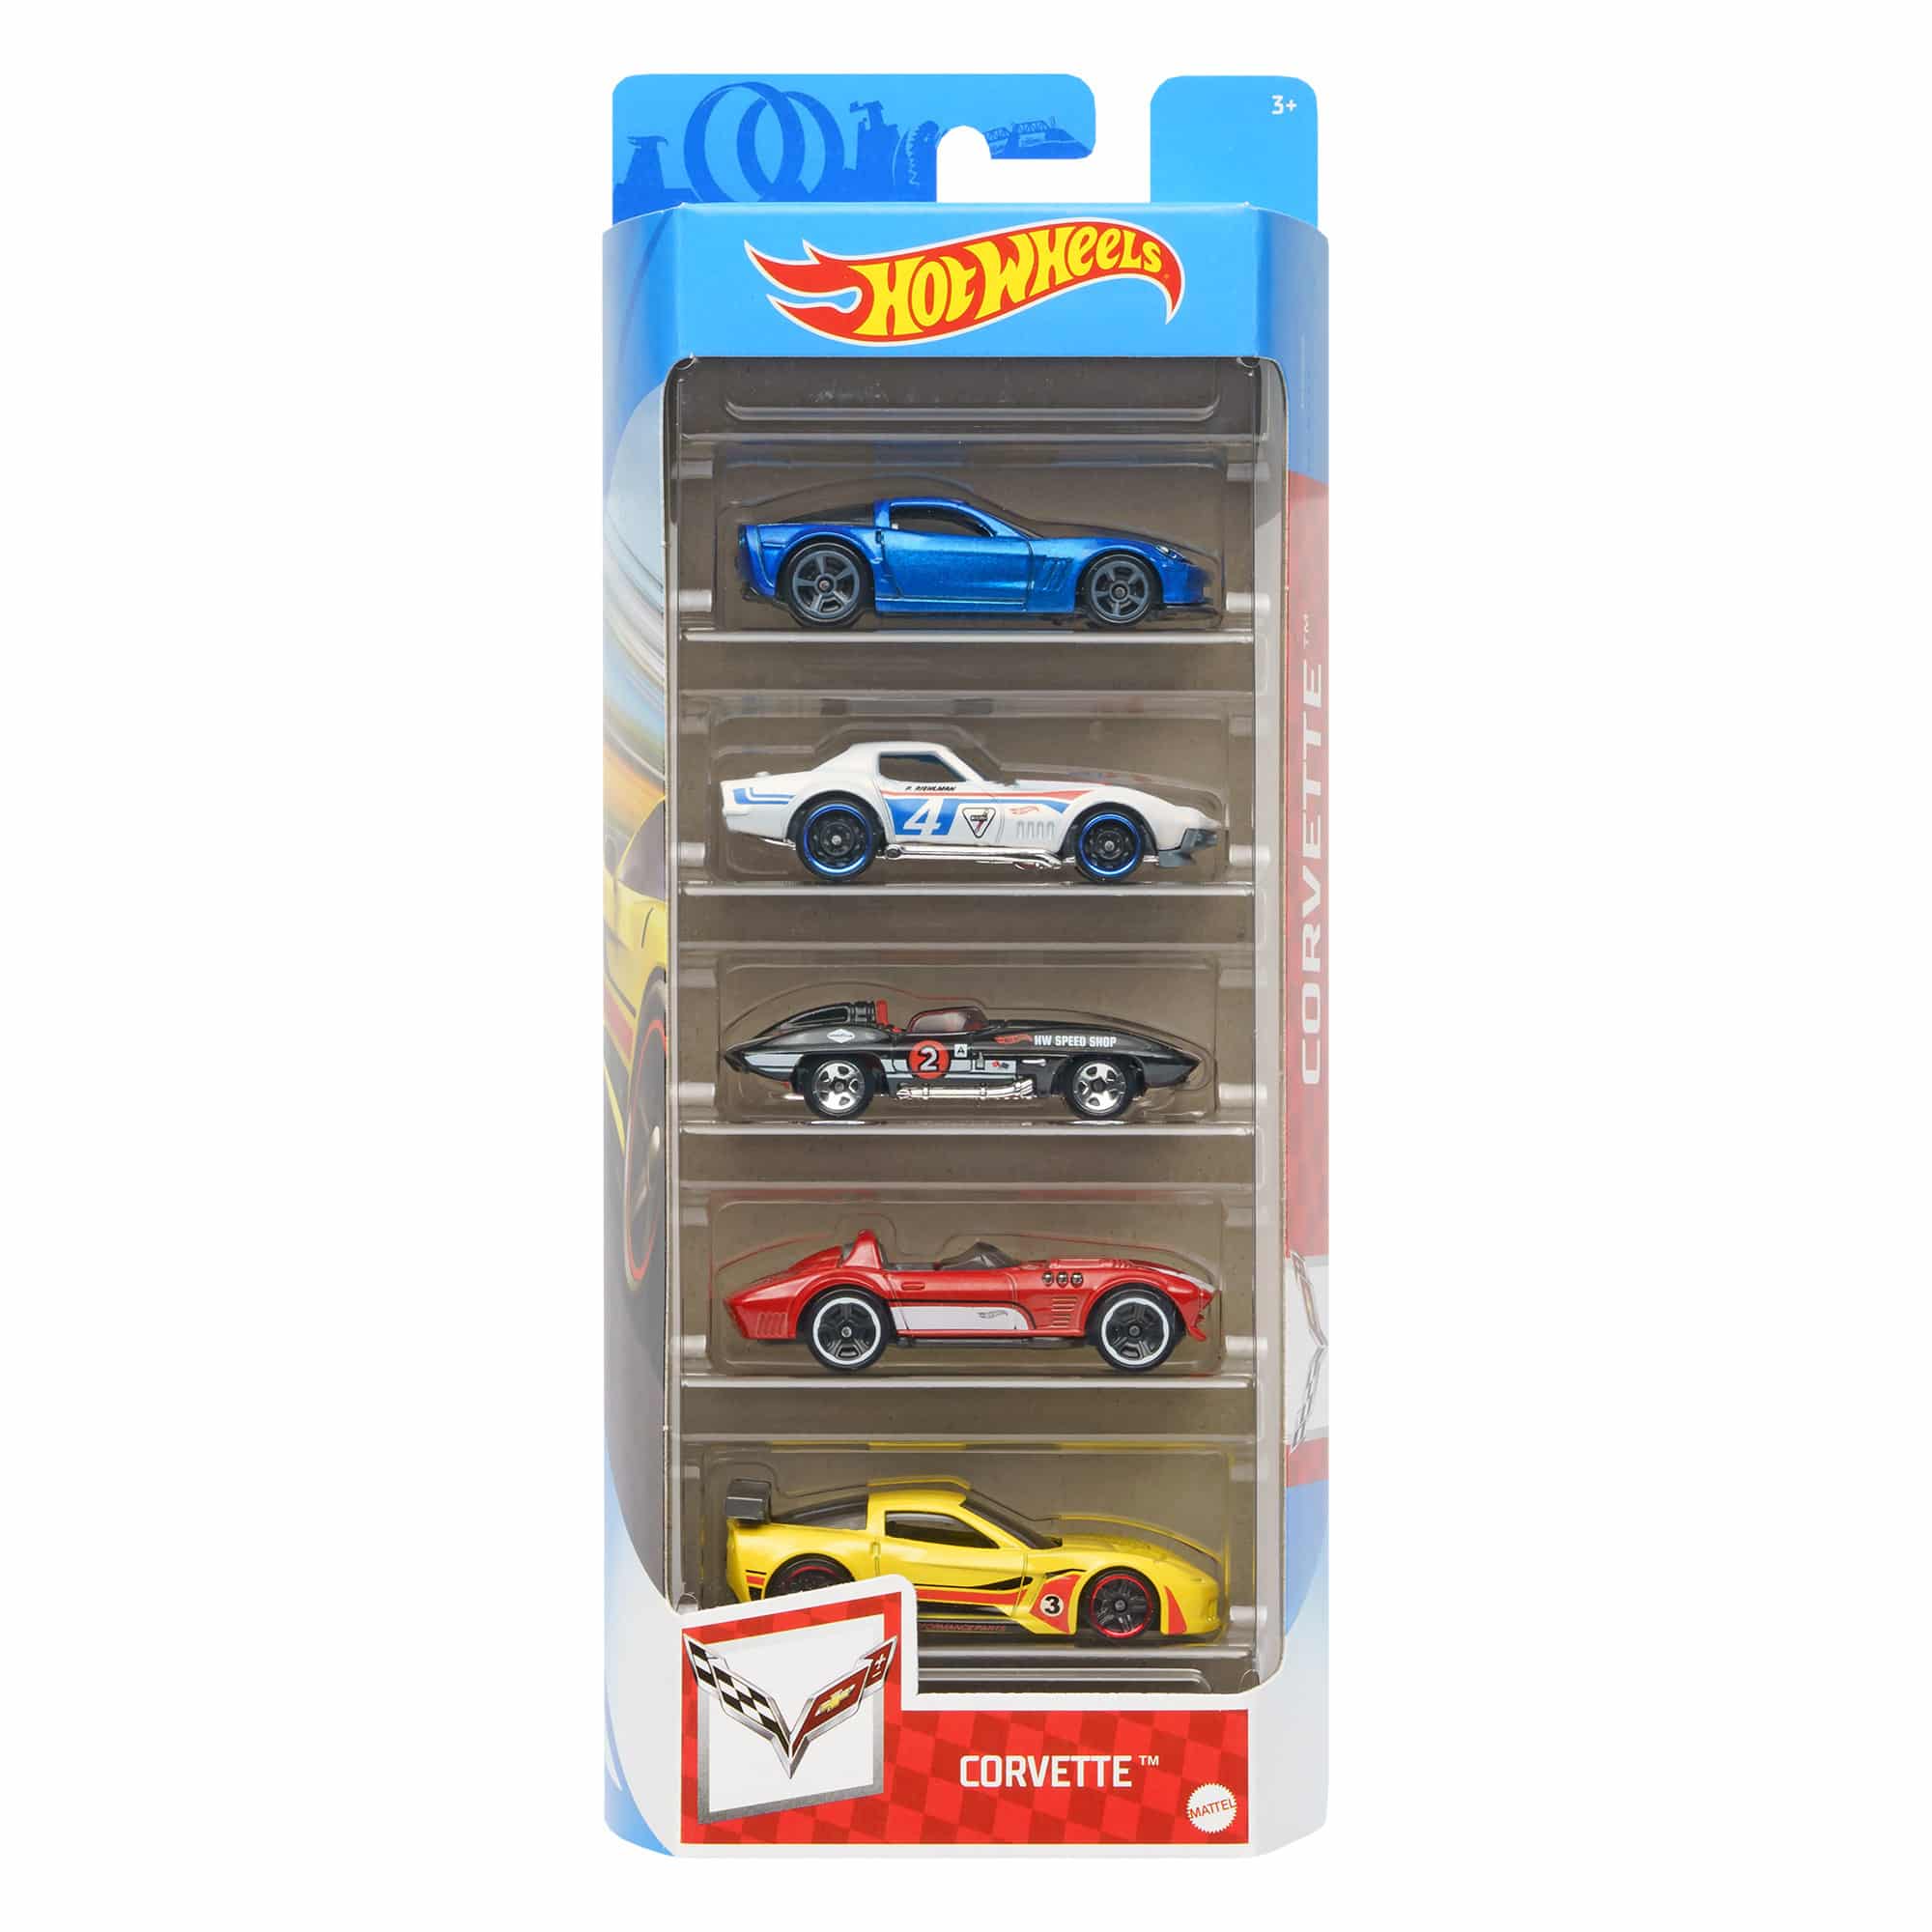 Hot Wheels 5 Car Gift Pack - Corvette